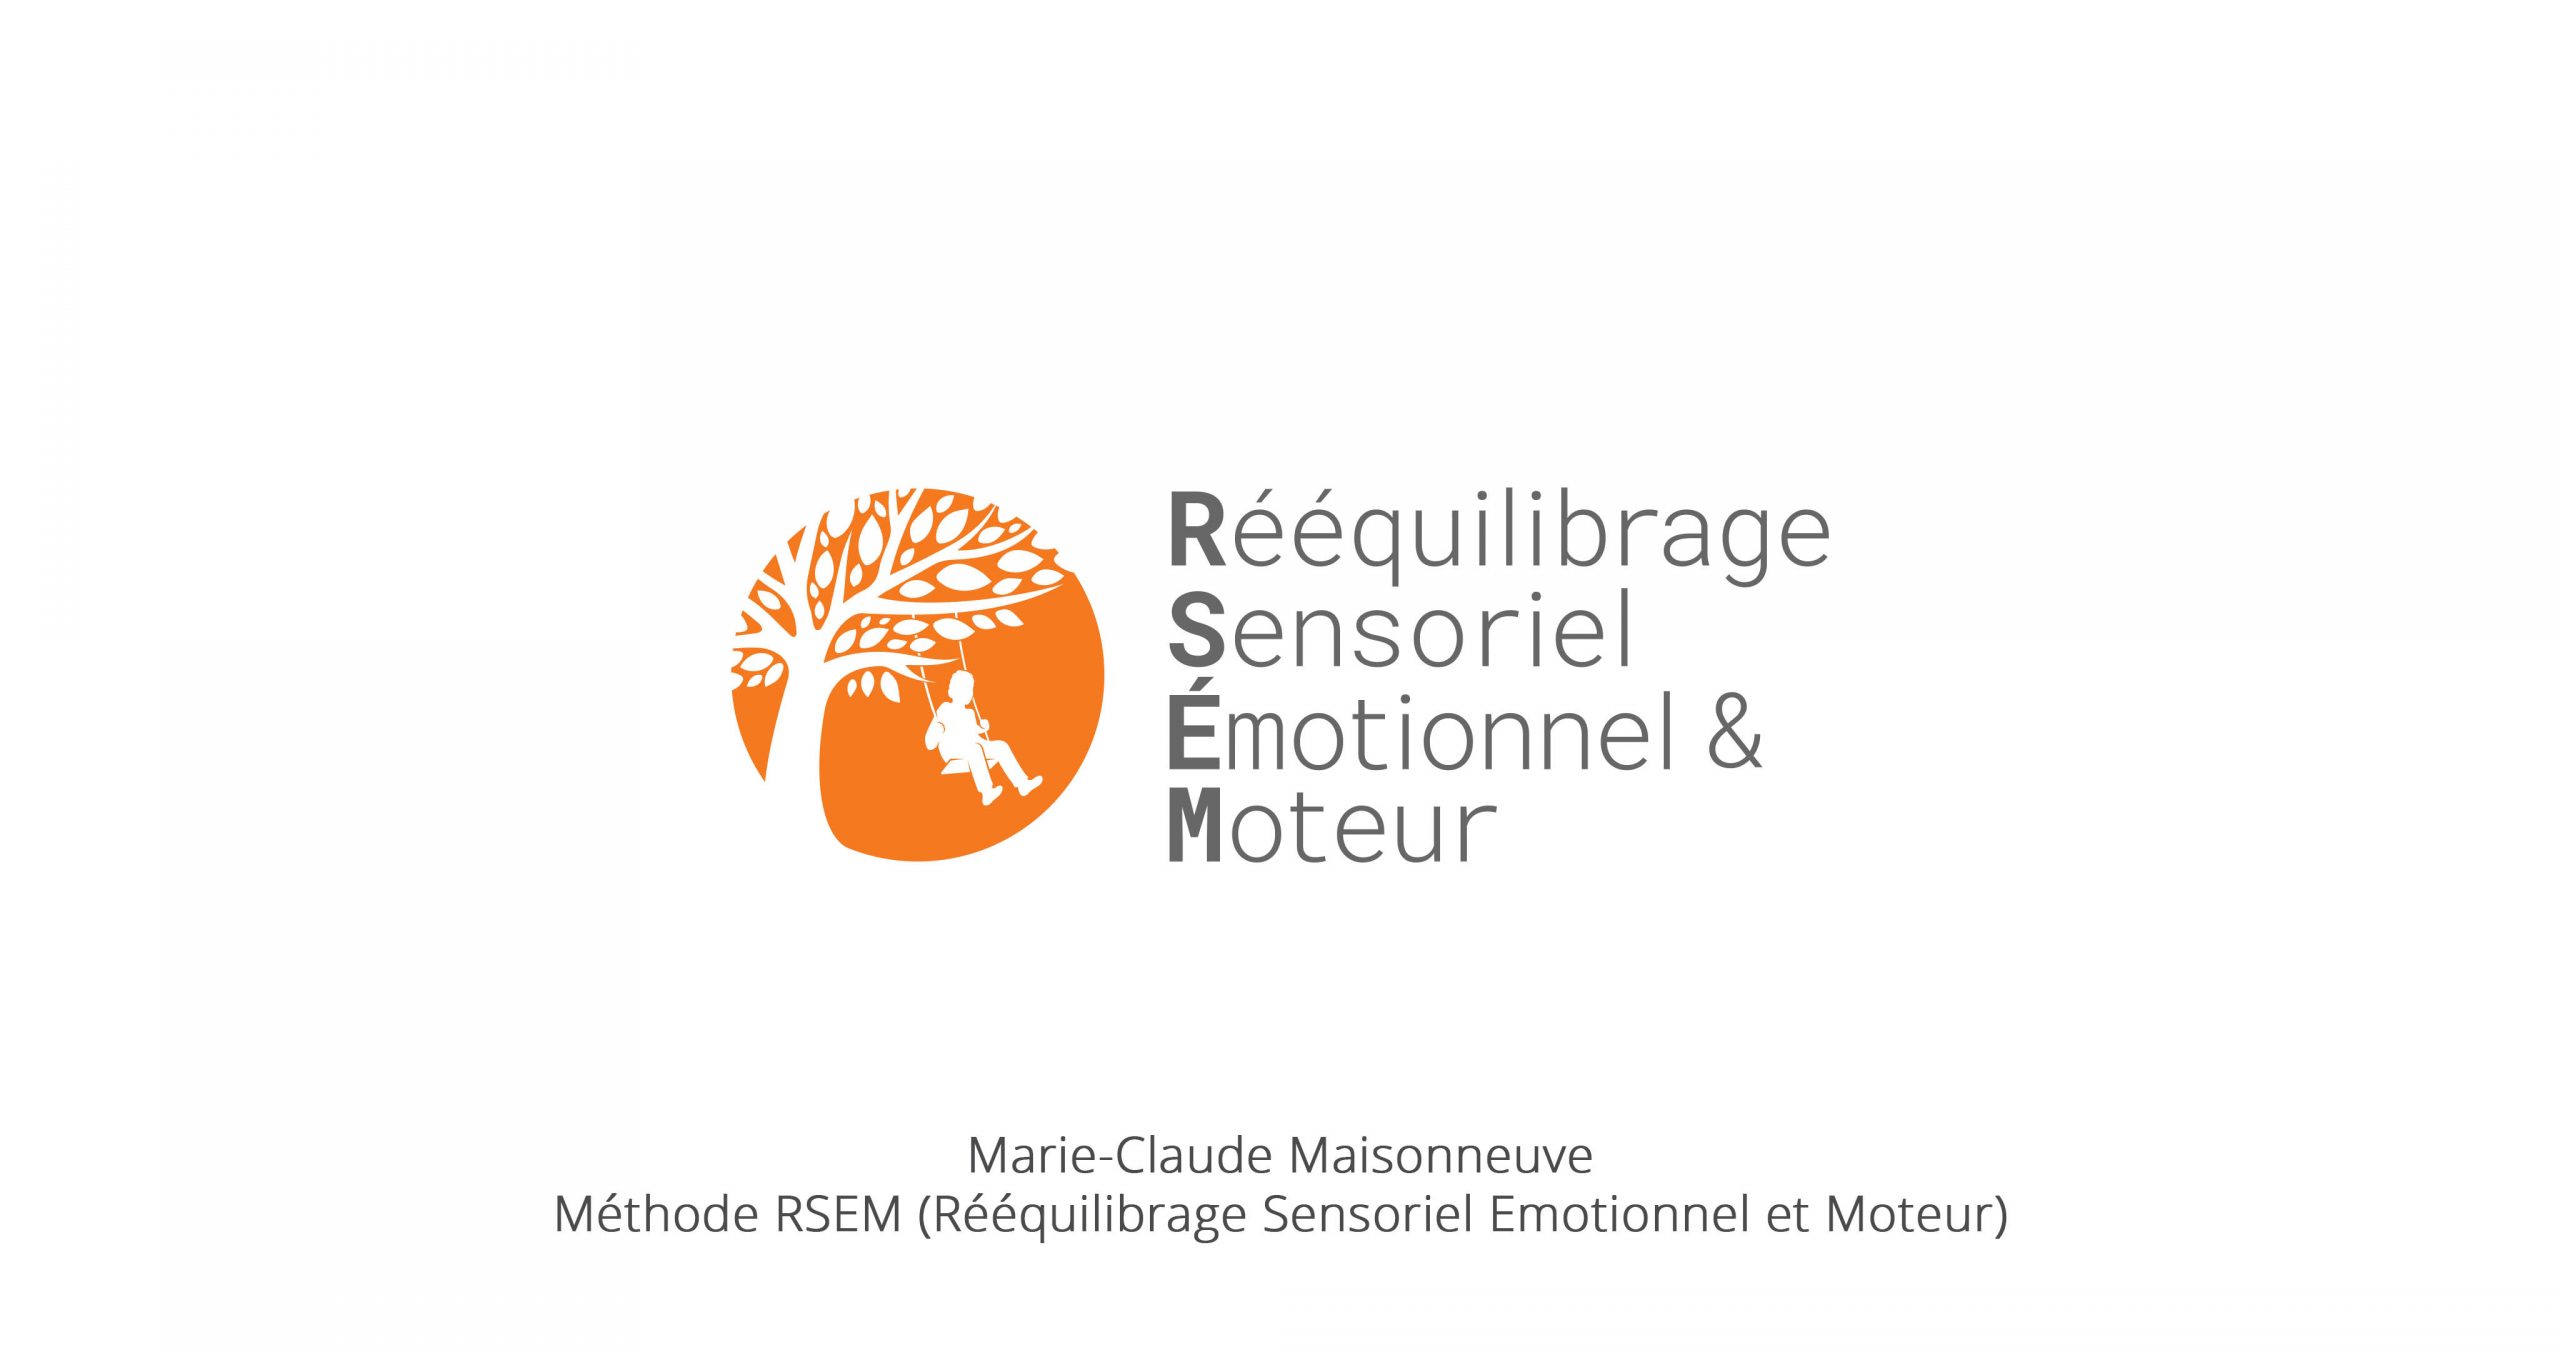 Marie-Claude Maisonneuve et sa méthode RSEM (Rééquilibrage Sensoriel Émotionnel et Moteur)